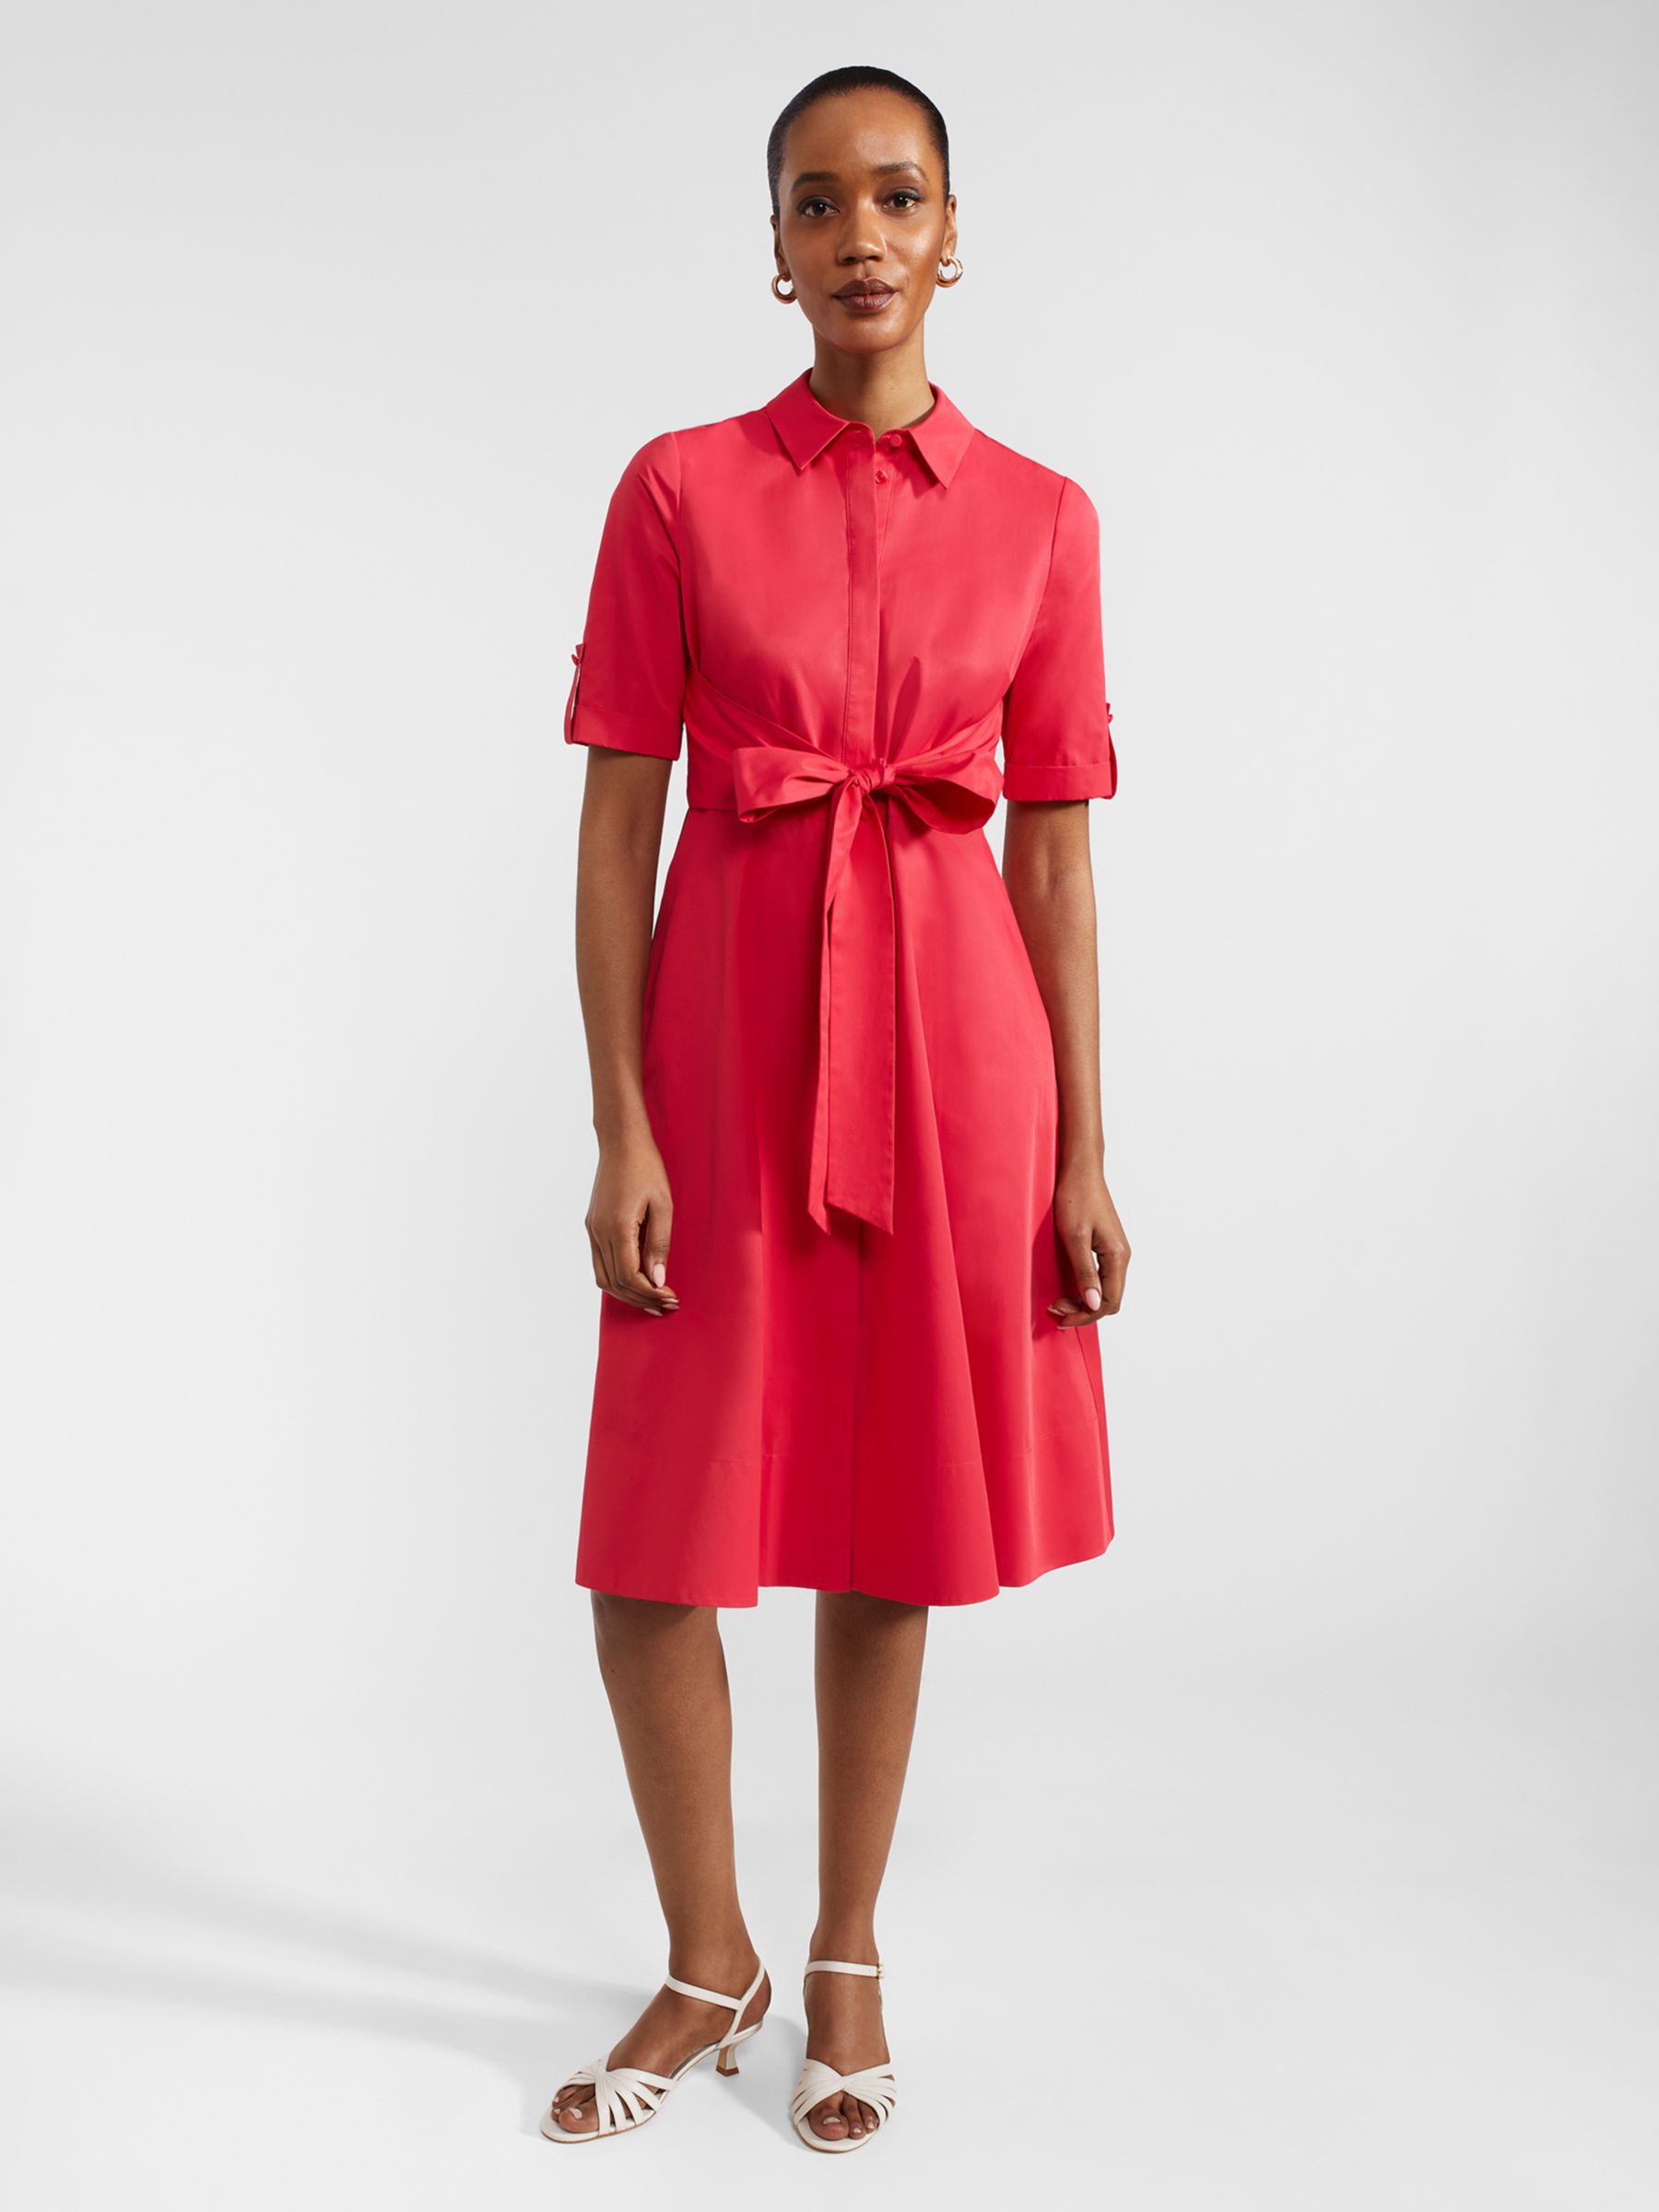 Hobbs Tarianna Belted Shirt Dress, Rouge Pink, 10